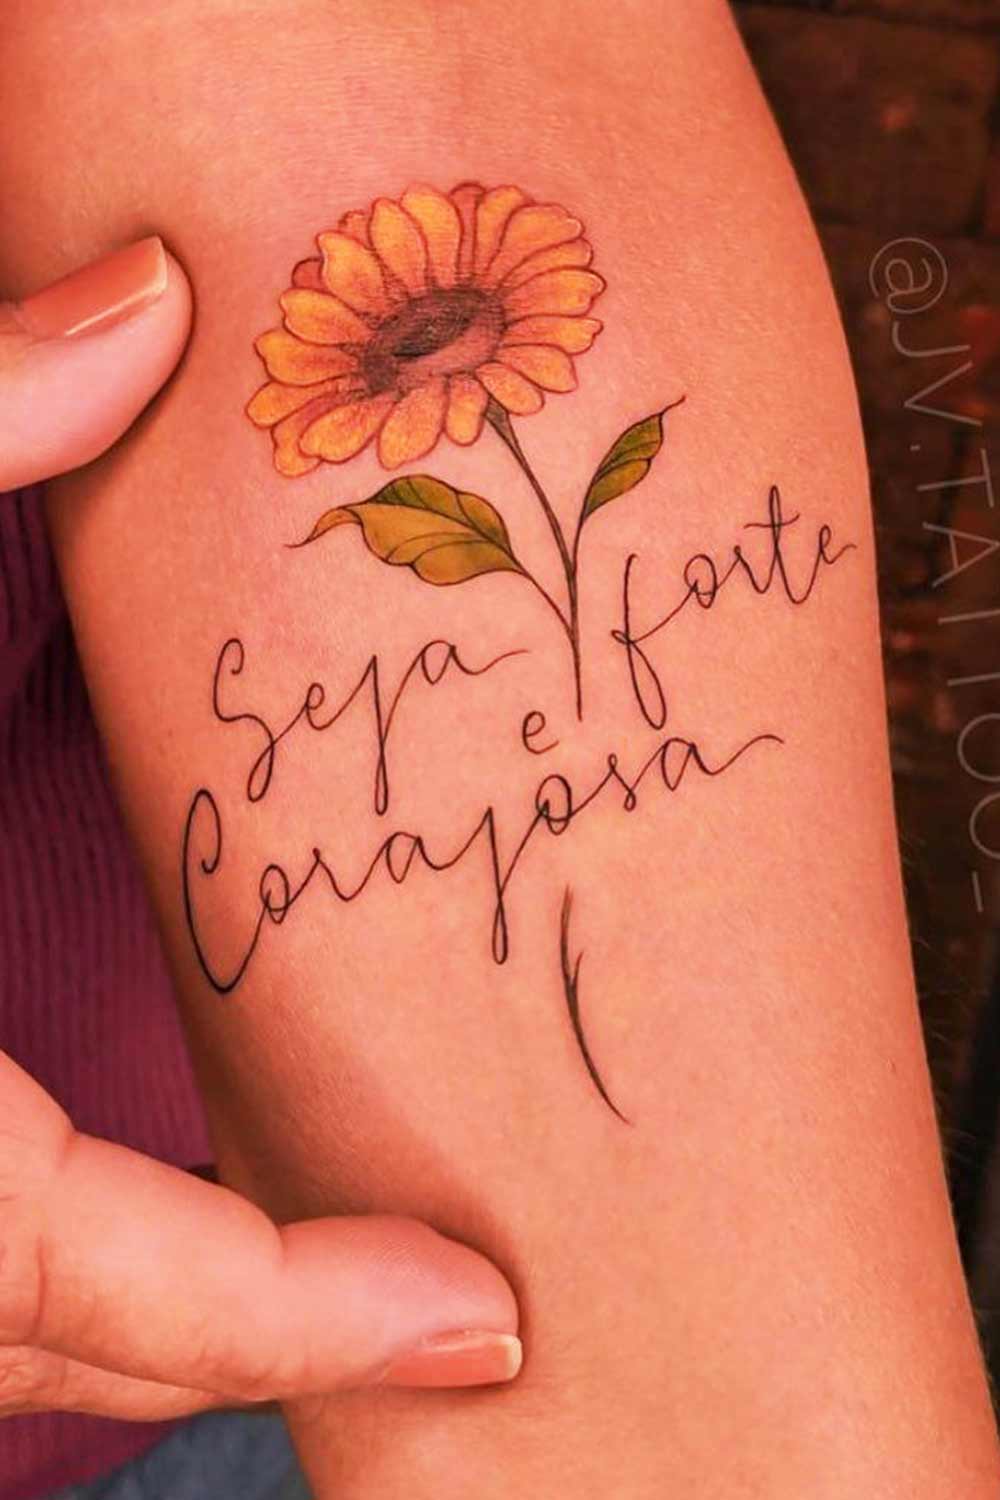 tatuagem-de-girassol-escrito-seja-forte-e-corajosa 